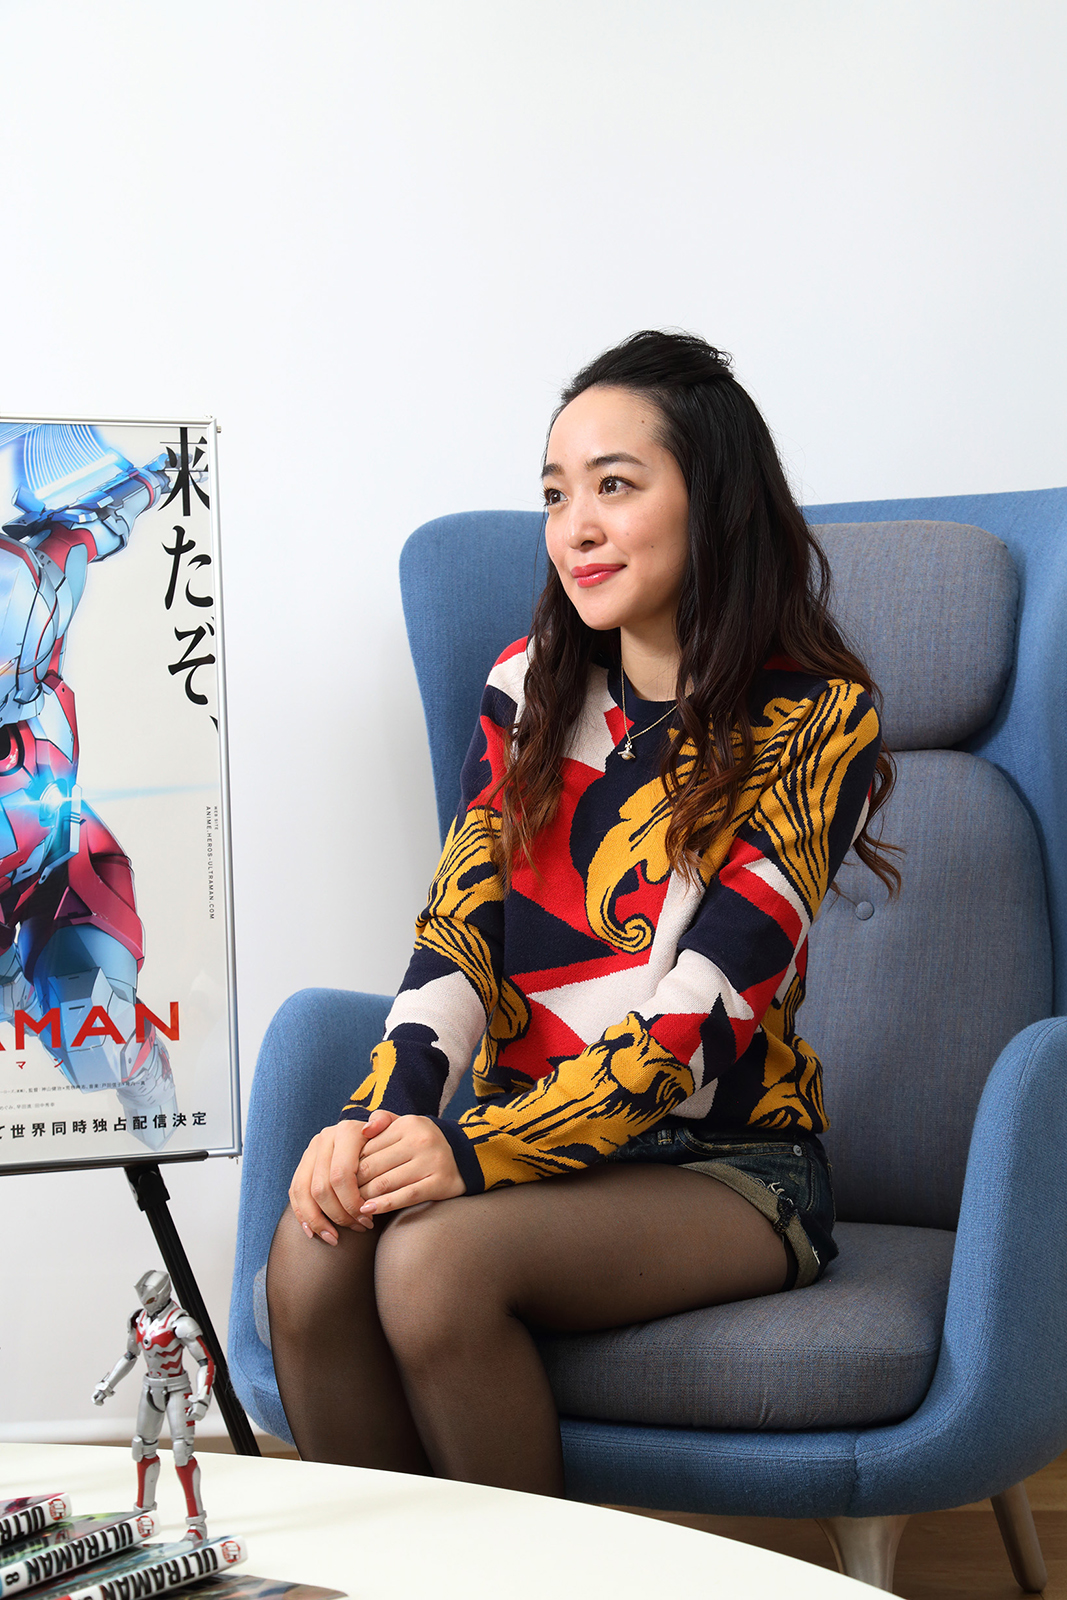 アニメ Ultraman キャストインタビュー Vol 3 潘めぐみさん Ultraman公式サイト